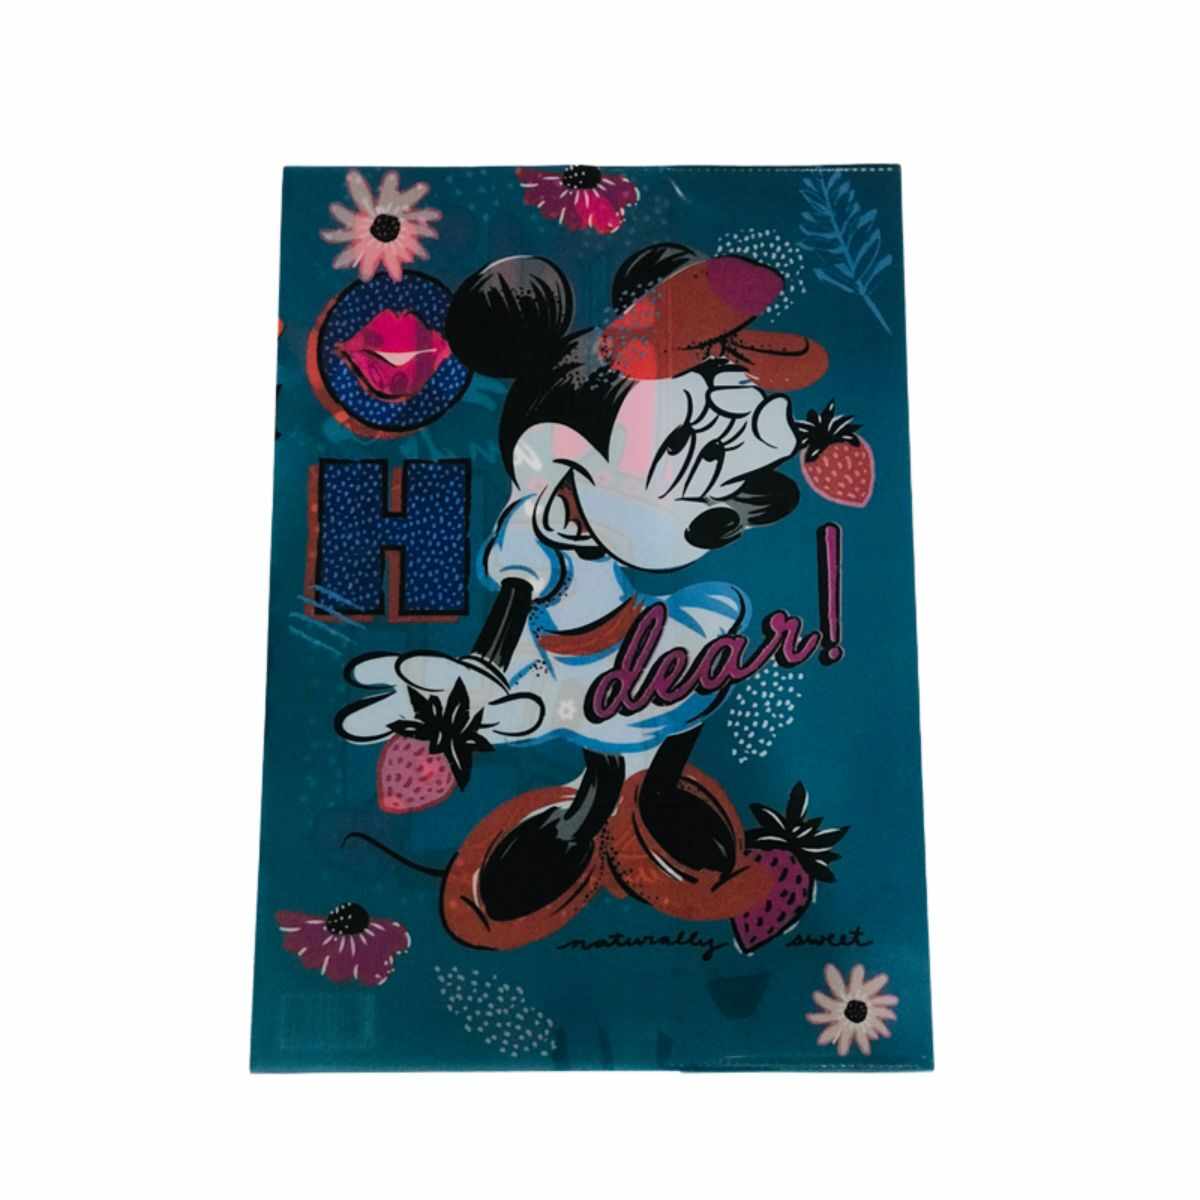 Coperta caiet A4 Minnie Mouse